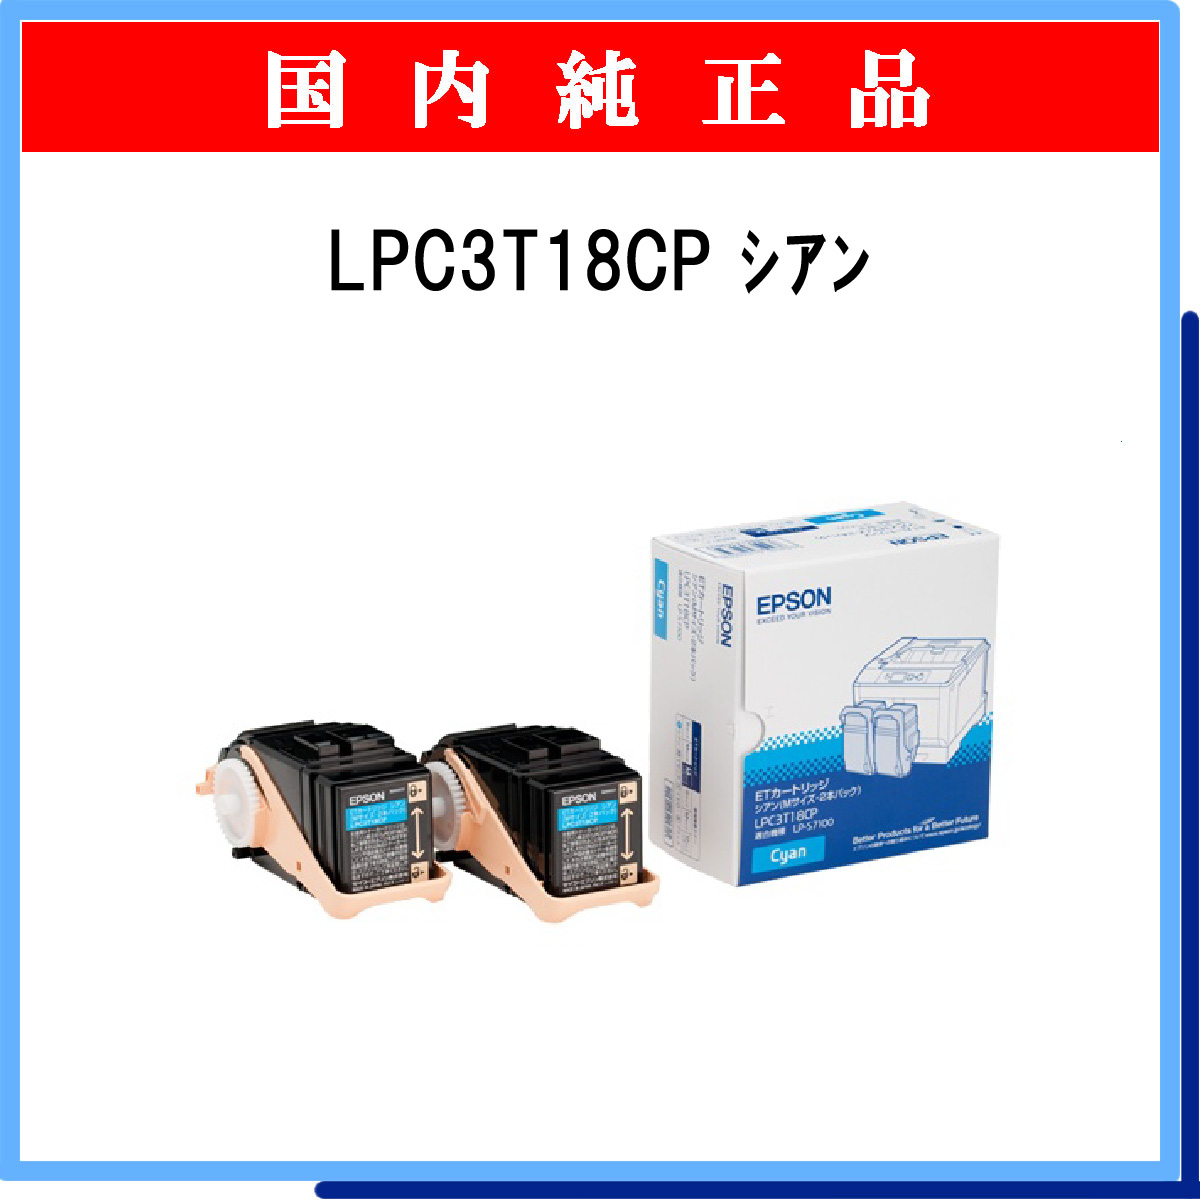 EPSON Offirio LP-S7100 シリーズ用 トナーカートリッジ スマートスタイルカートリッジ イエロー Mサイズ 6500ページ LPC3T18Y - 2